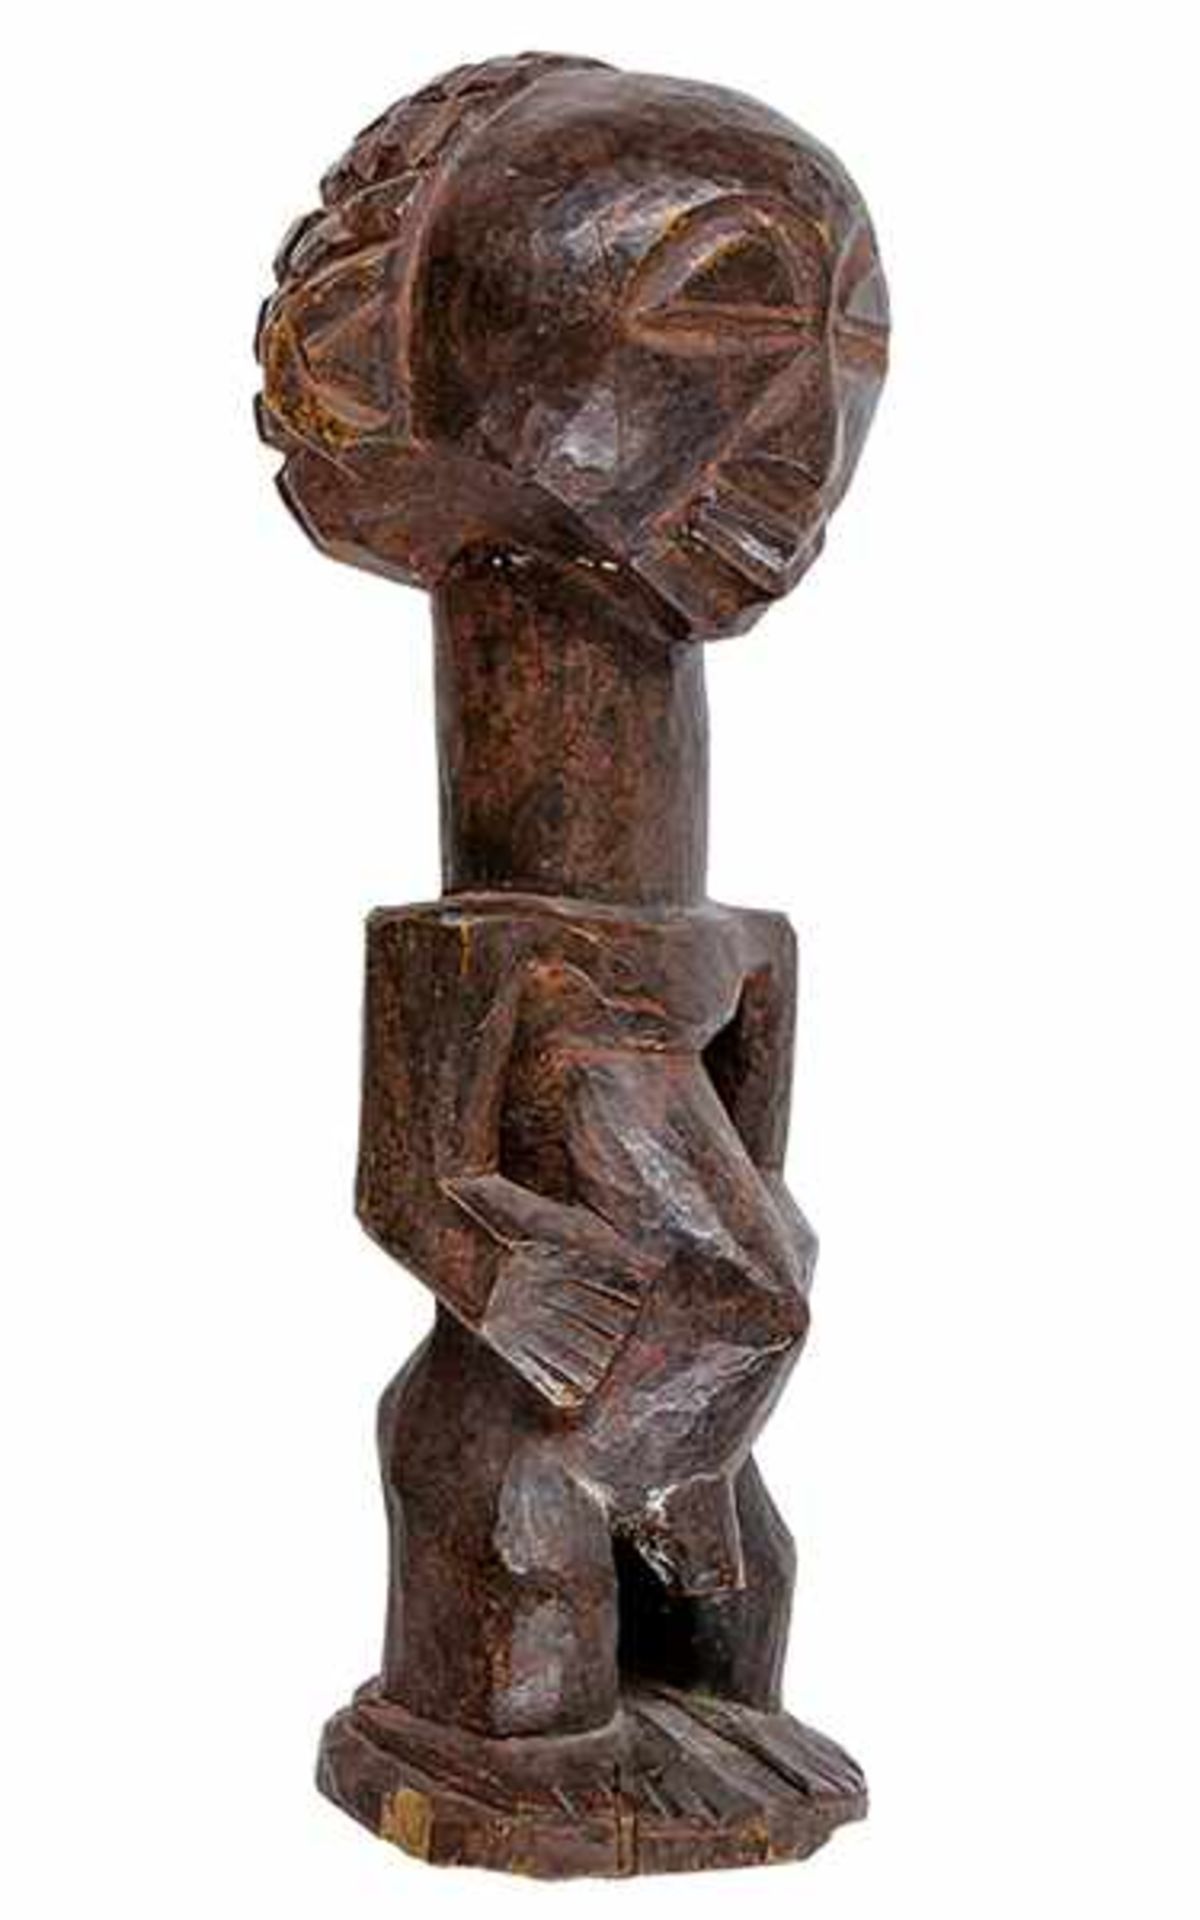 Afrikana - - Männliche Figur. Luba. Holz. Größe: 34 x 11 x 12 cm.Mit leichten Gebrauchsspuren. -